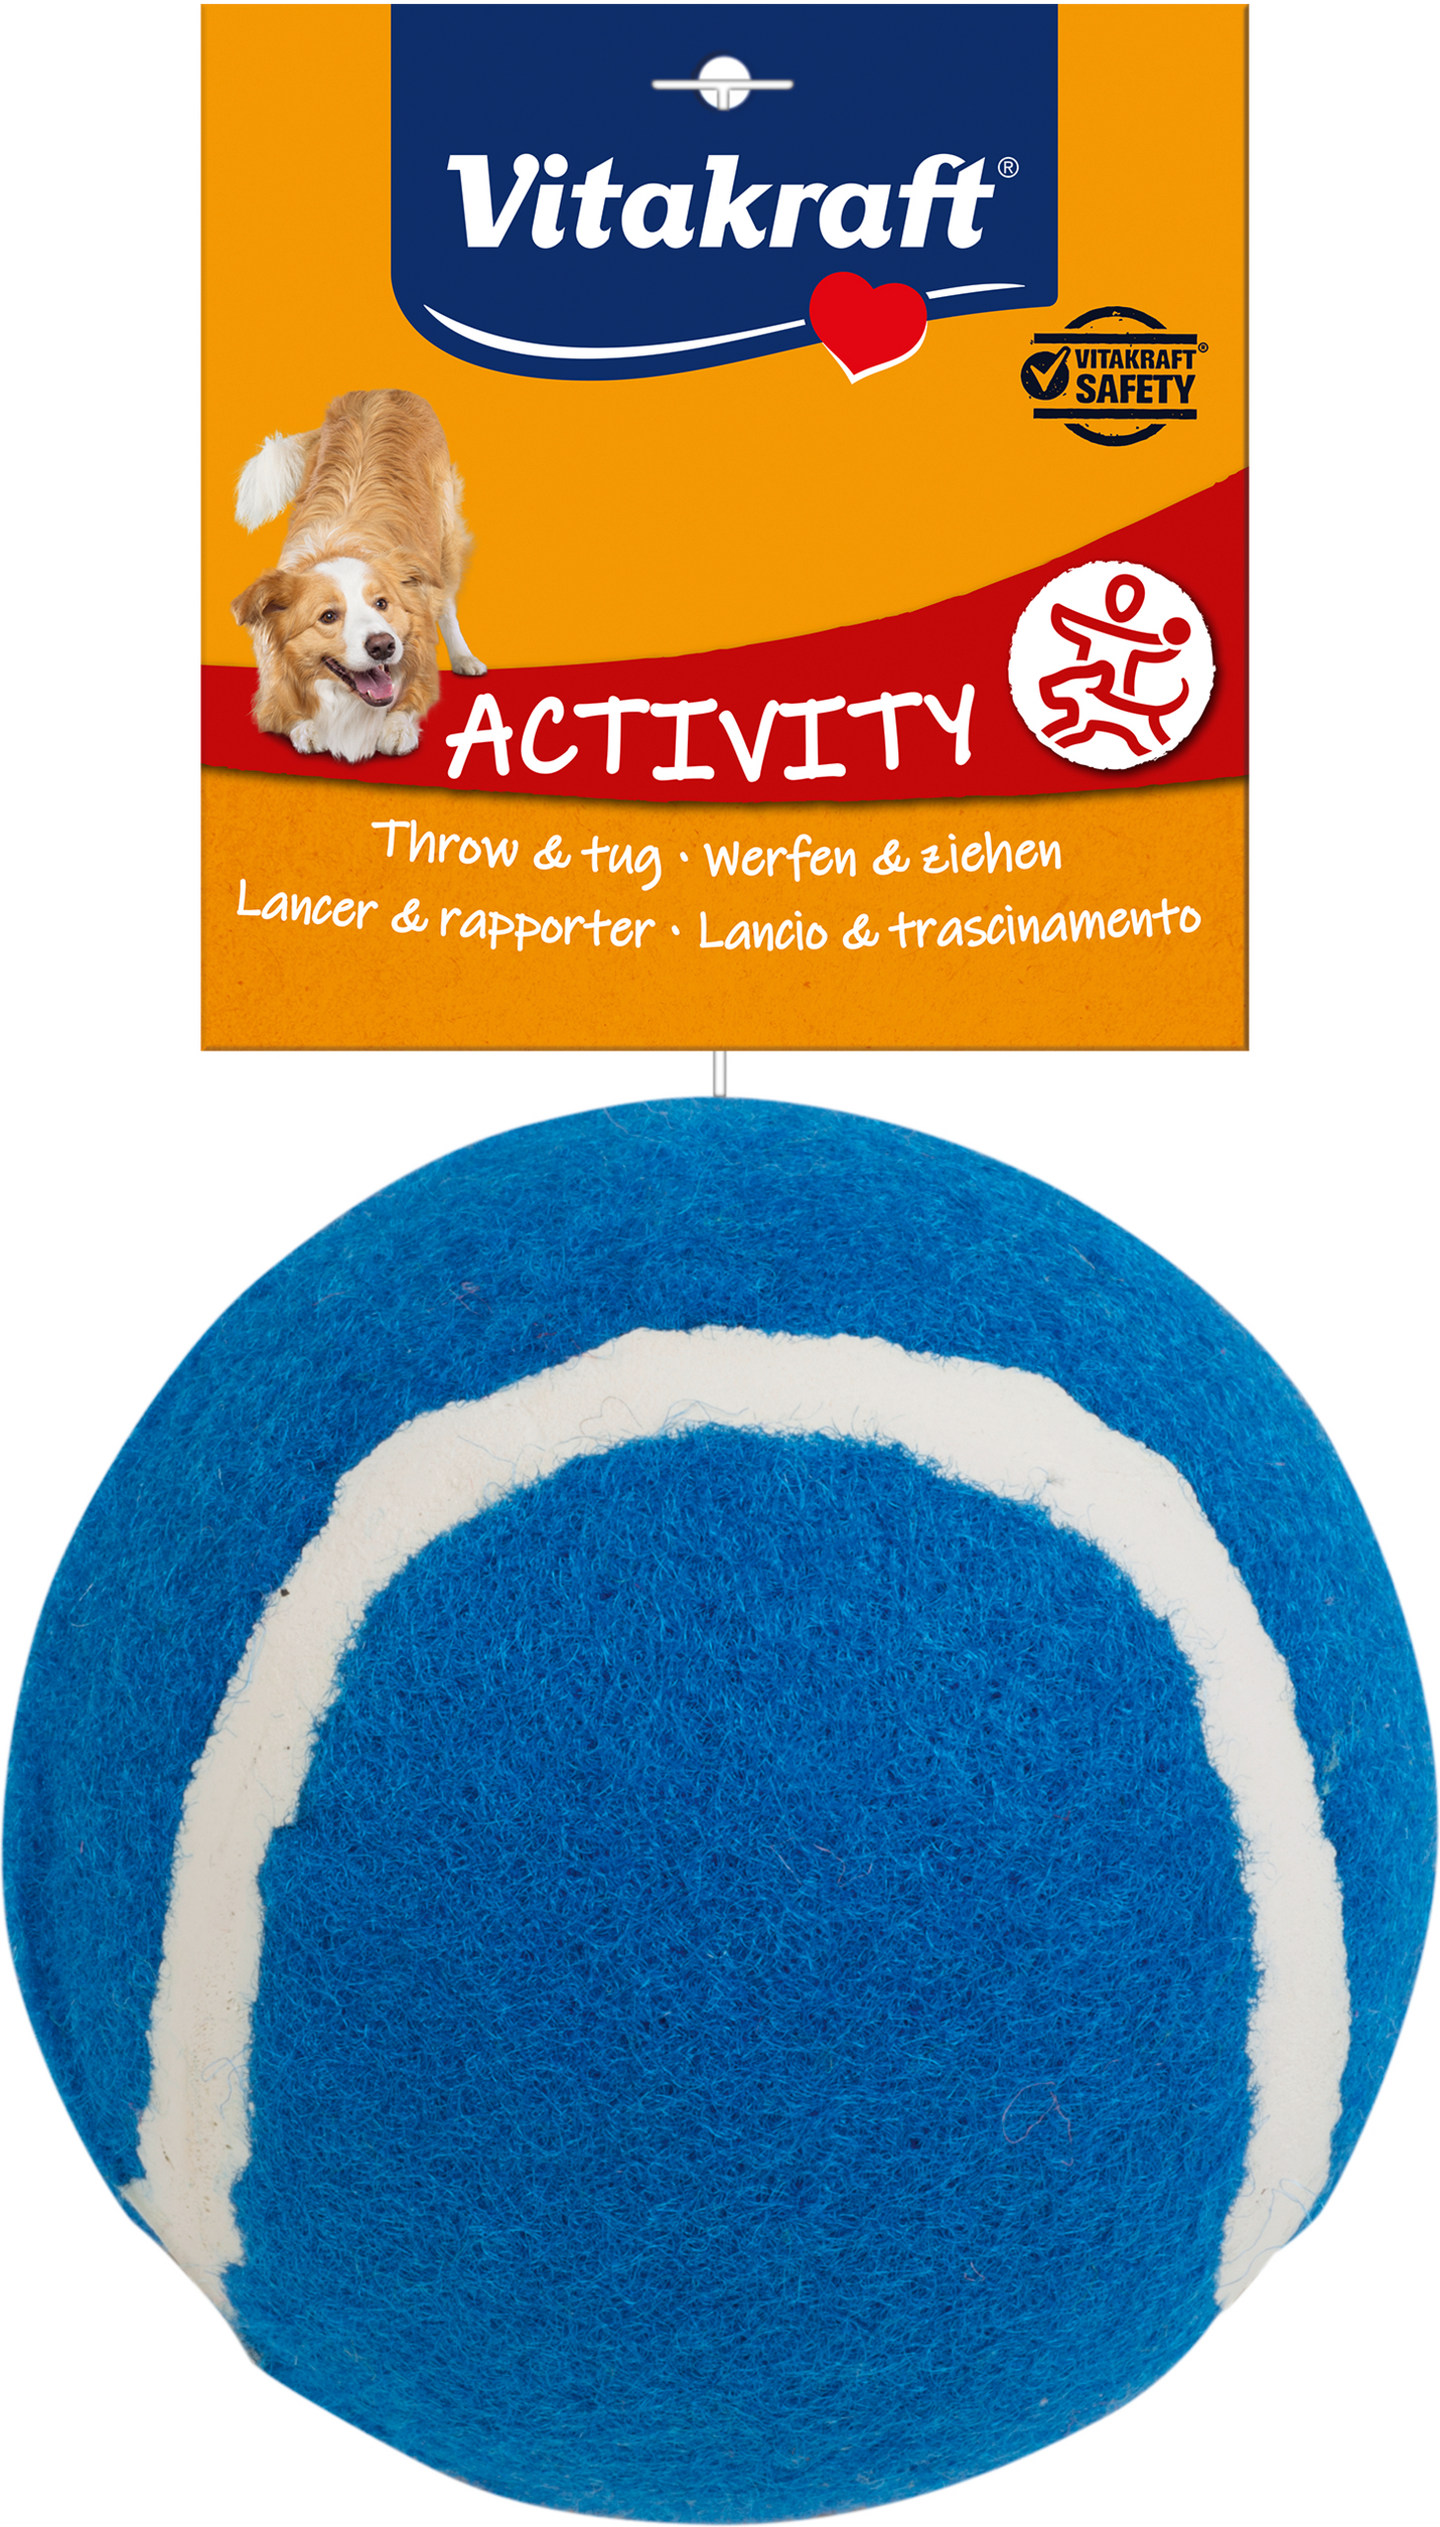 Vitakraft koiran tennispallo